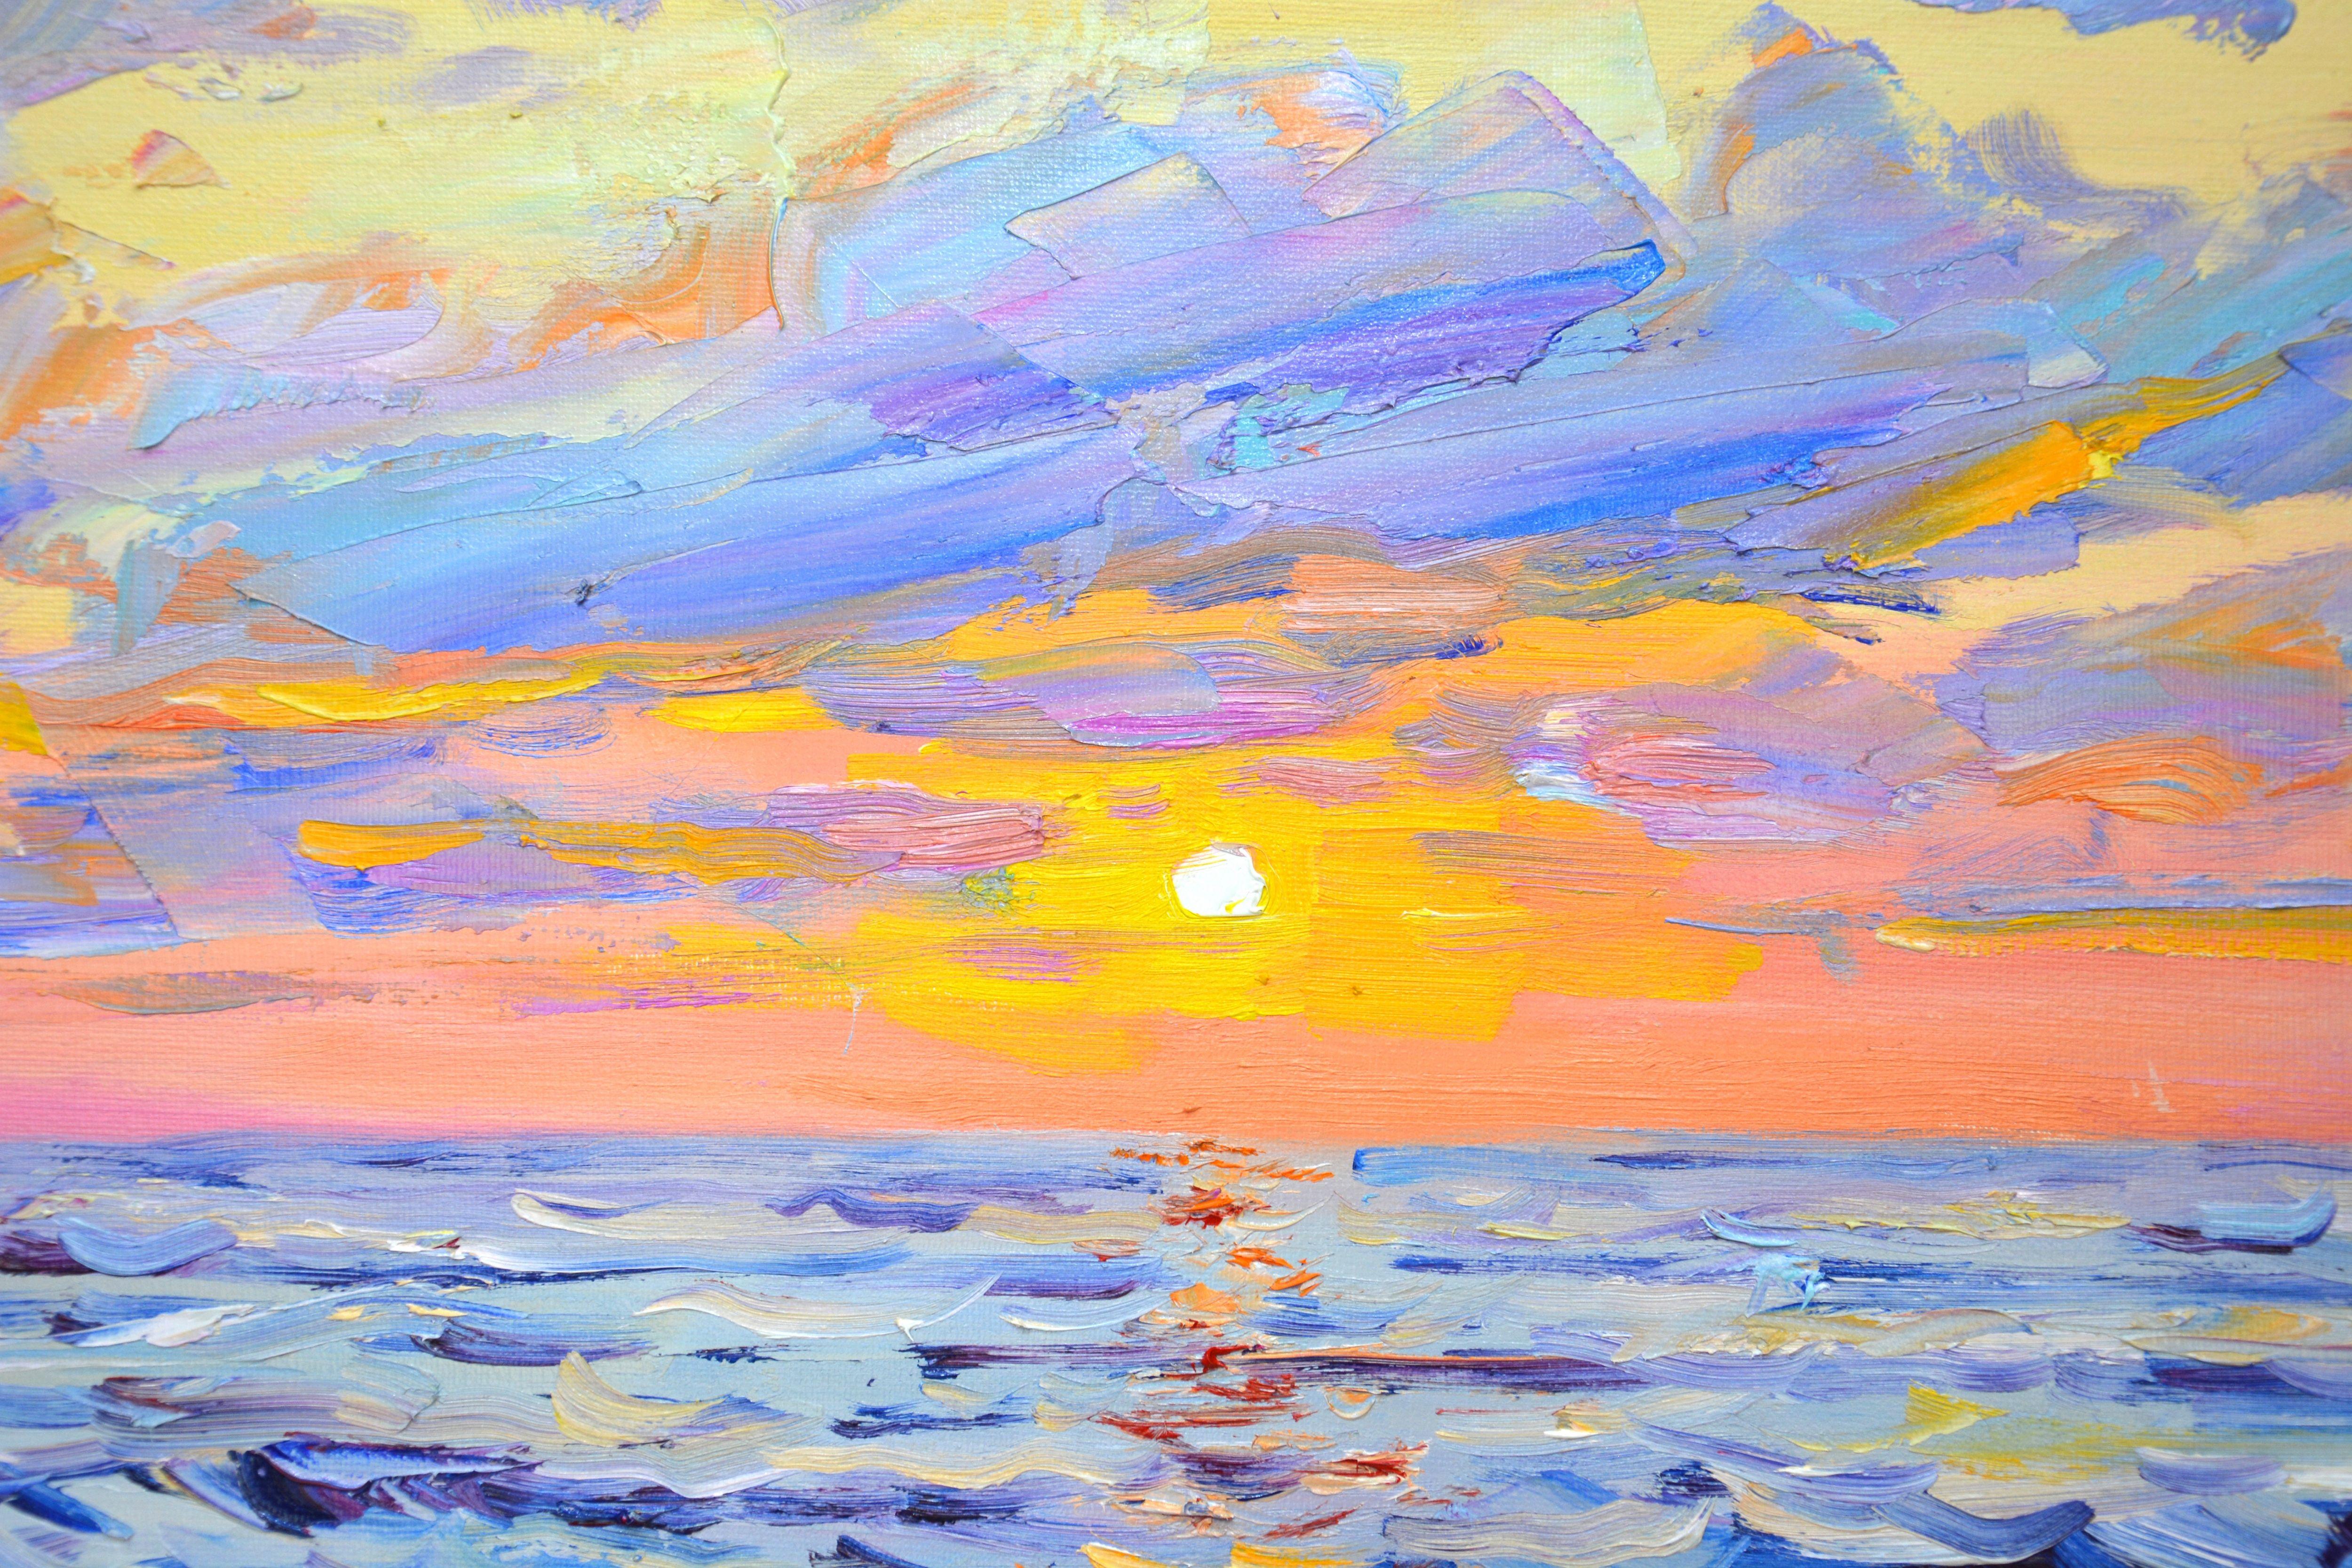 Das Meer, der Sonnenuntergang über dem Wasser, der Himmel, die Wellen, der Meeresschaum und die ruhige Aussicht schaffen eine Atmosphäre der Romantik und Entspannung. Impressionismus. Das Werk ist ausdrucksstark mit Pinsel und Spachtel geschrieben. 